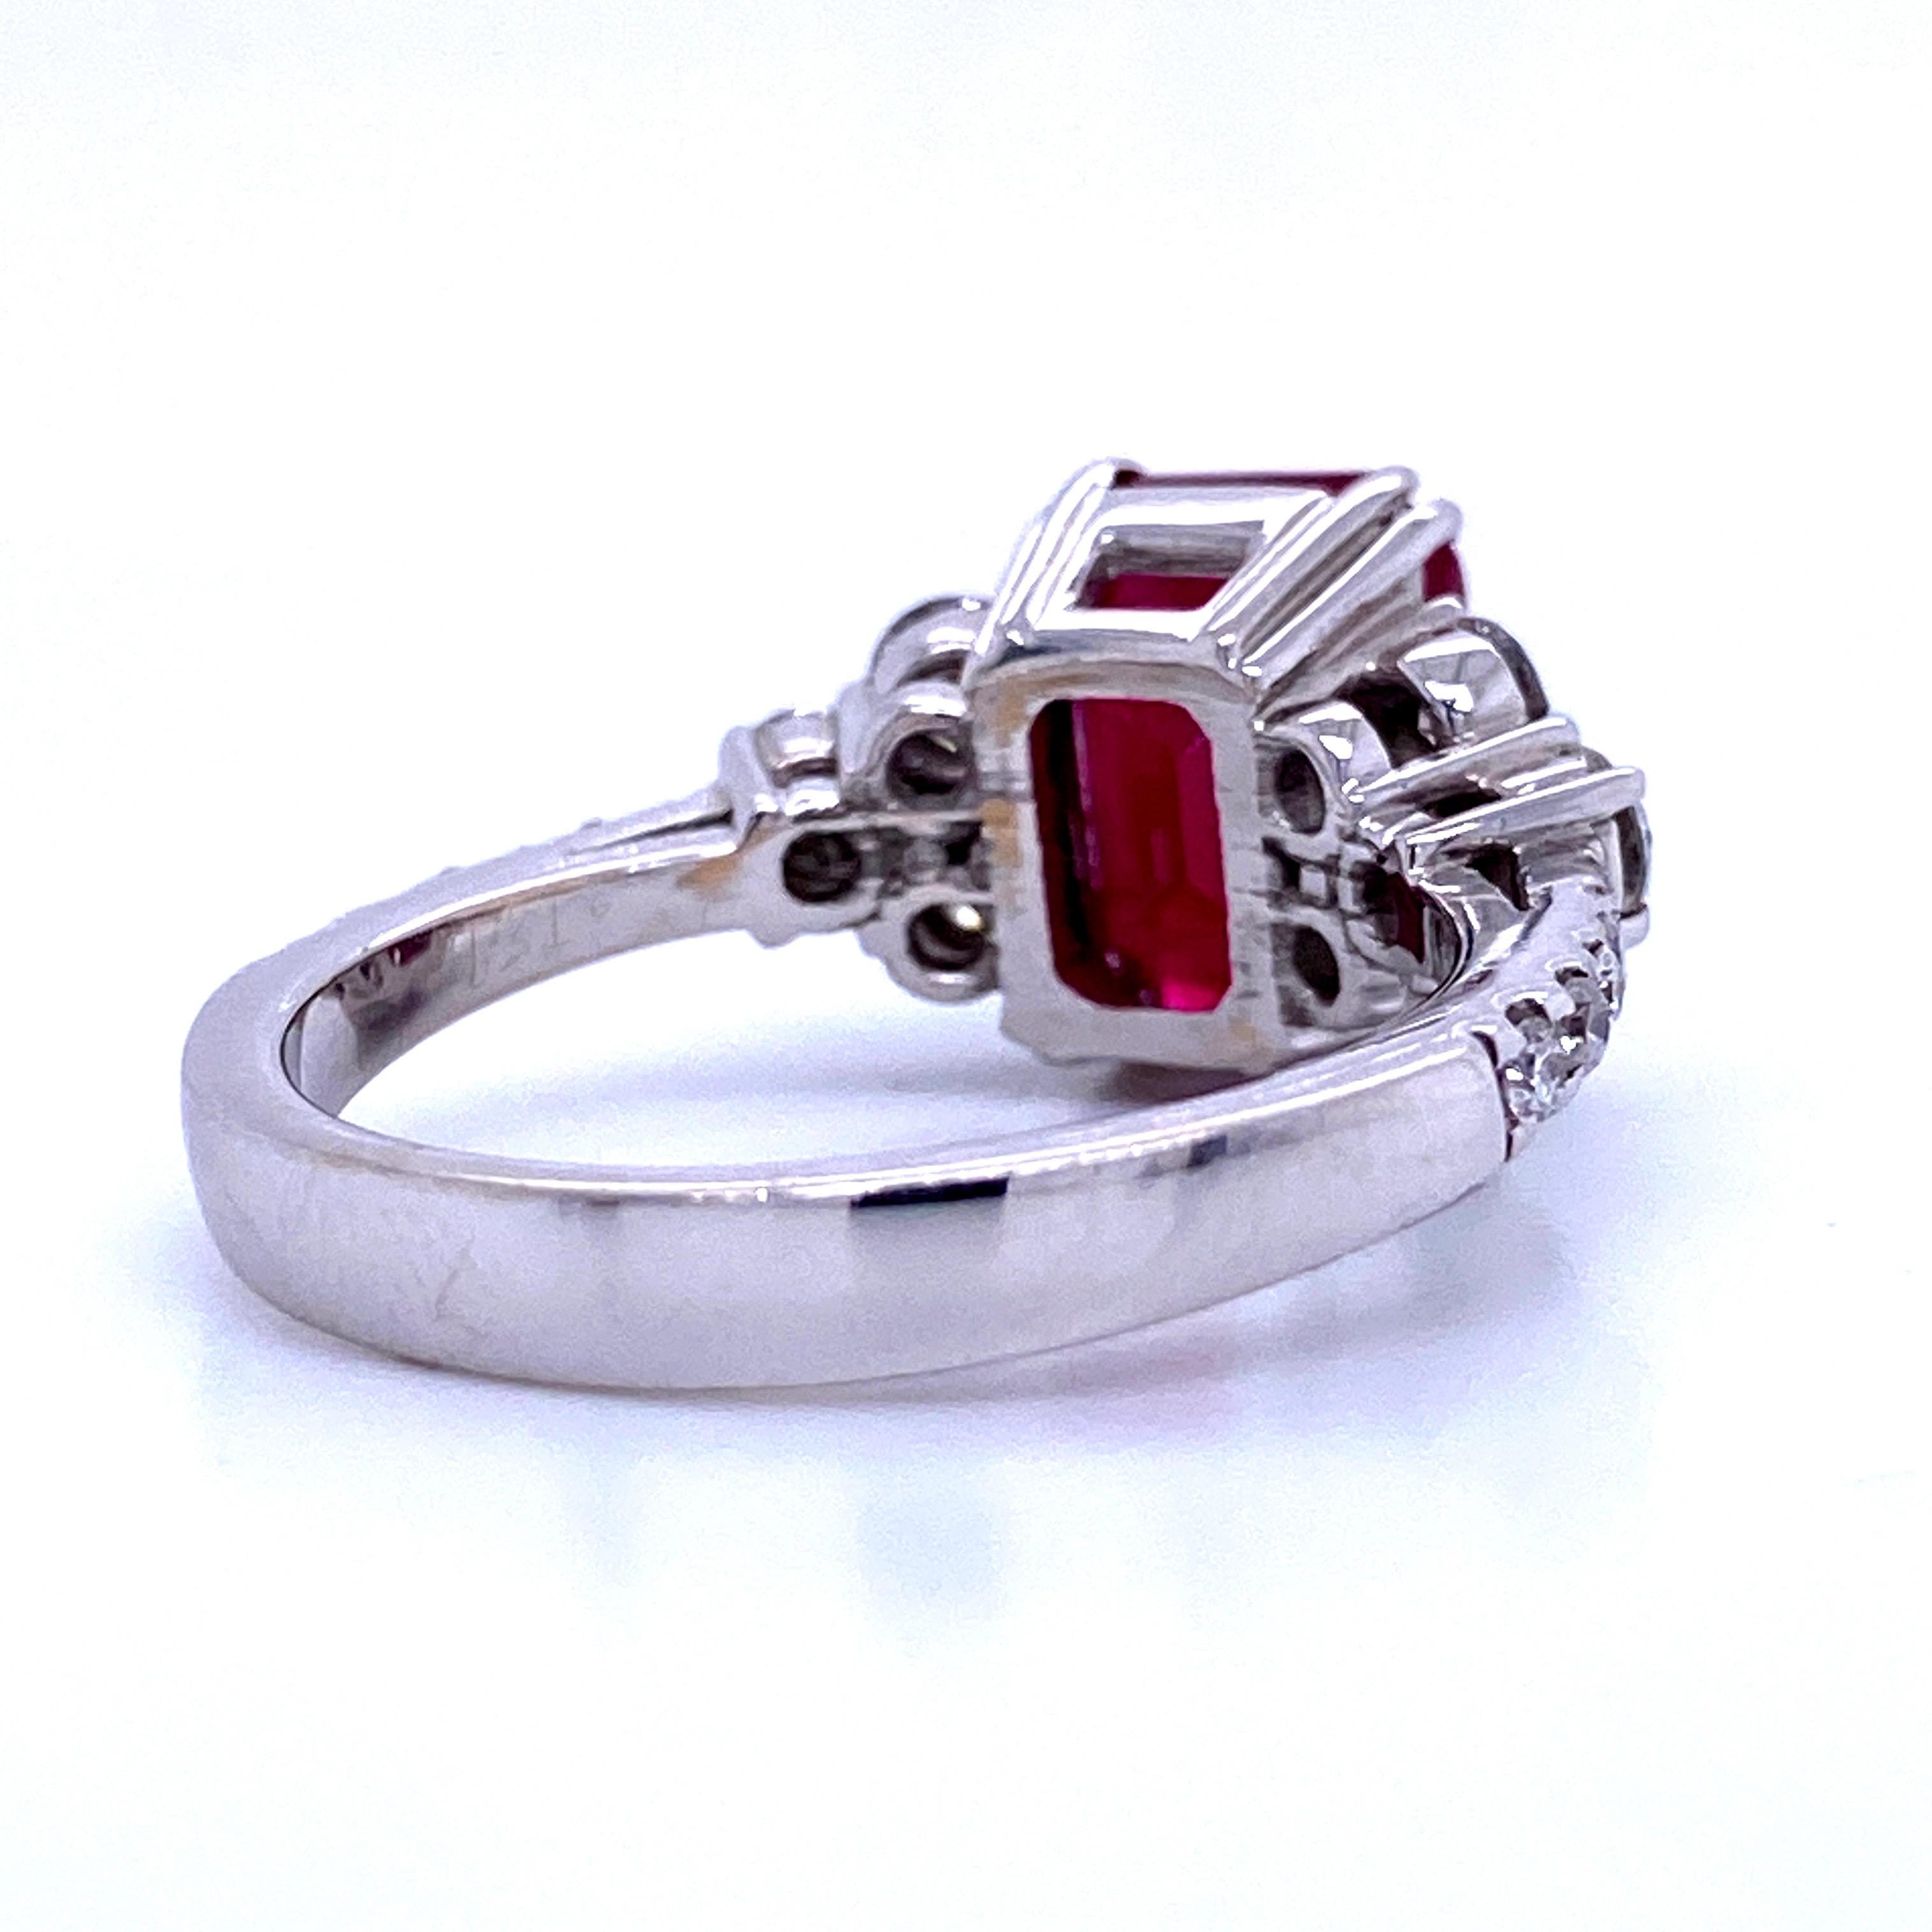 Burma Ruby Diamond Ring 4.79 Carat AGL Certified 18 Karat White Gold 1